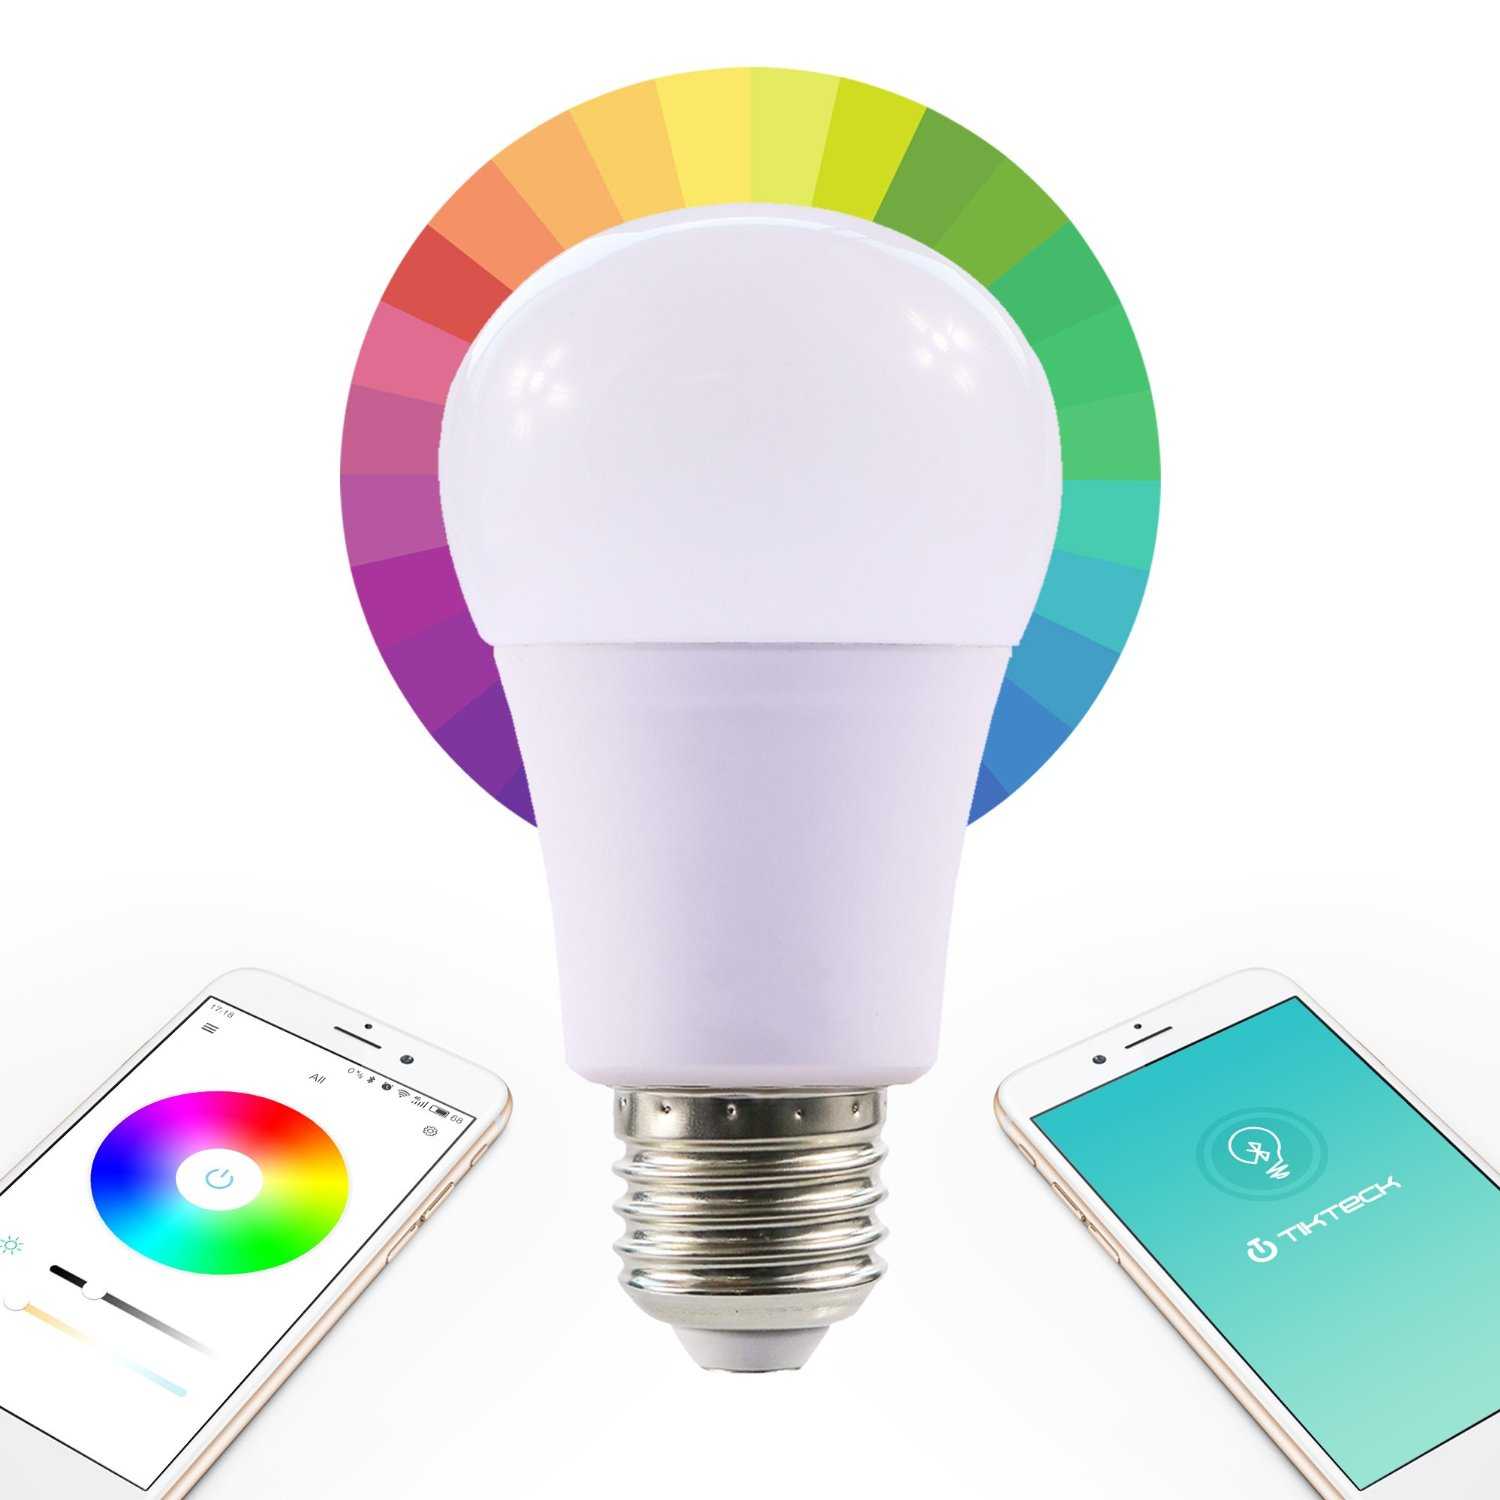 Да будет свет. обзор умных лампочек xiaomi mi led smart bulb + google home